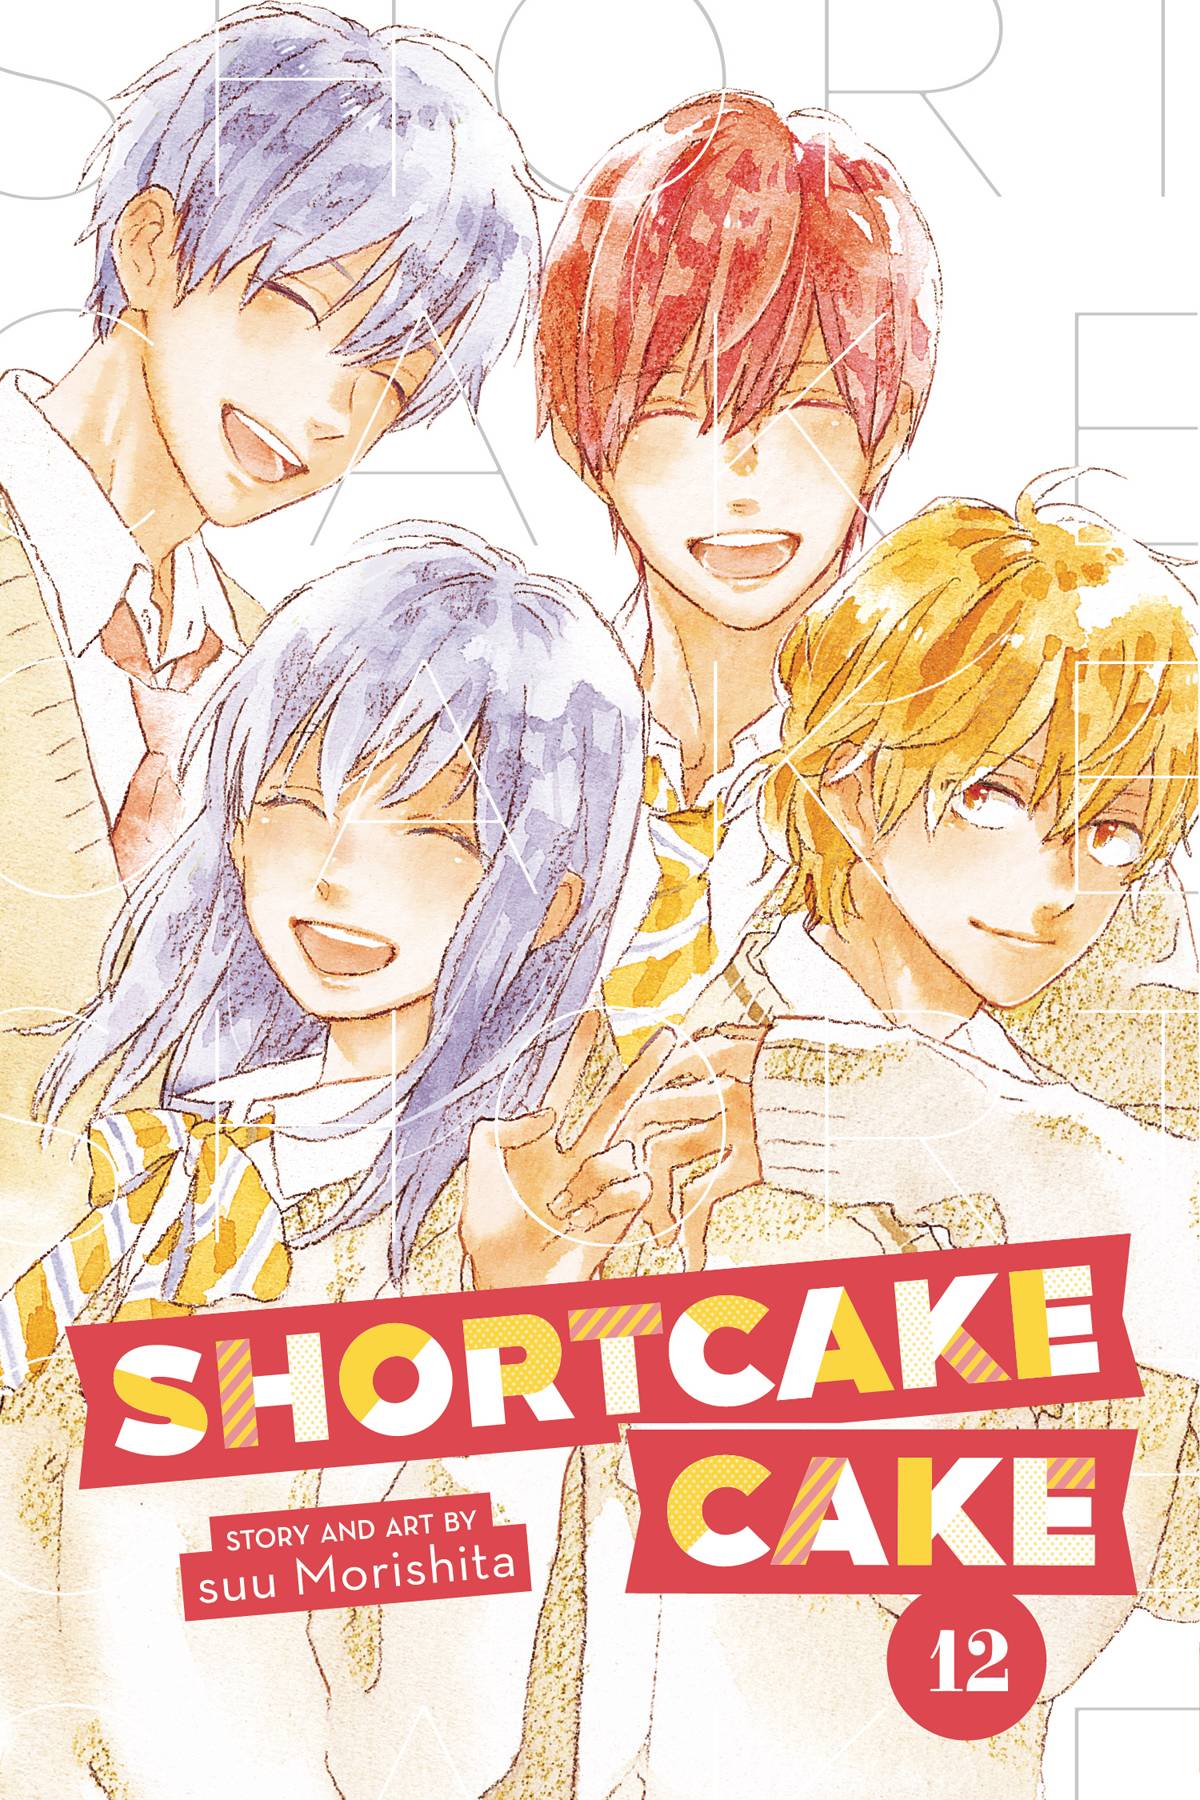 SHORTCAKE CAKE VOL 12